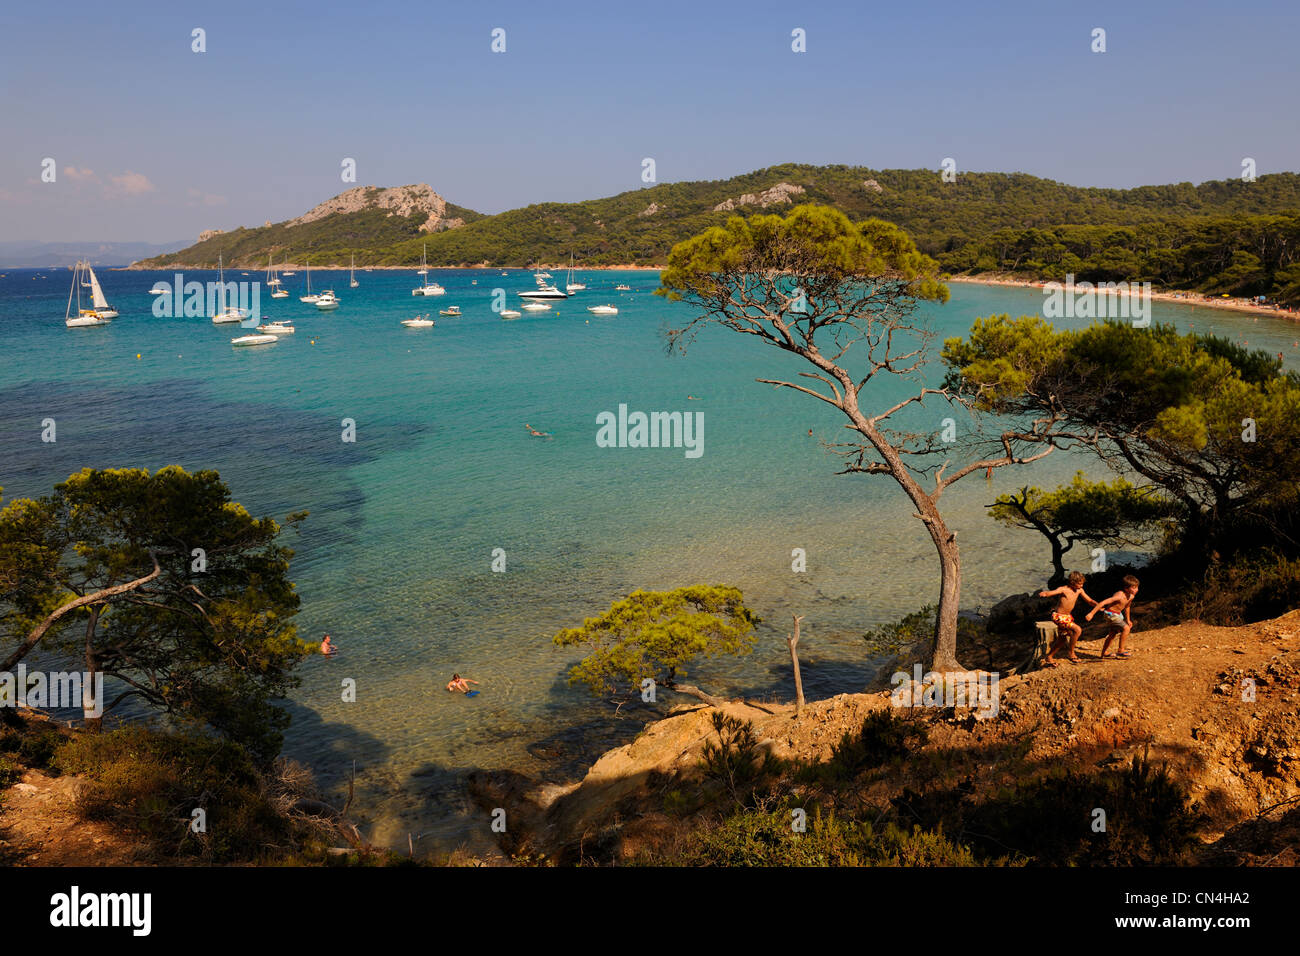 France, Var, iles d'Hyeres, Parc National de Port Cros (National Park of Port Cros), ile de Porquerolles, Notre Dame beach Stock Photo